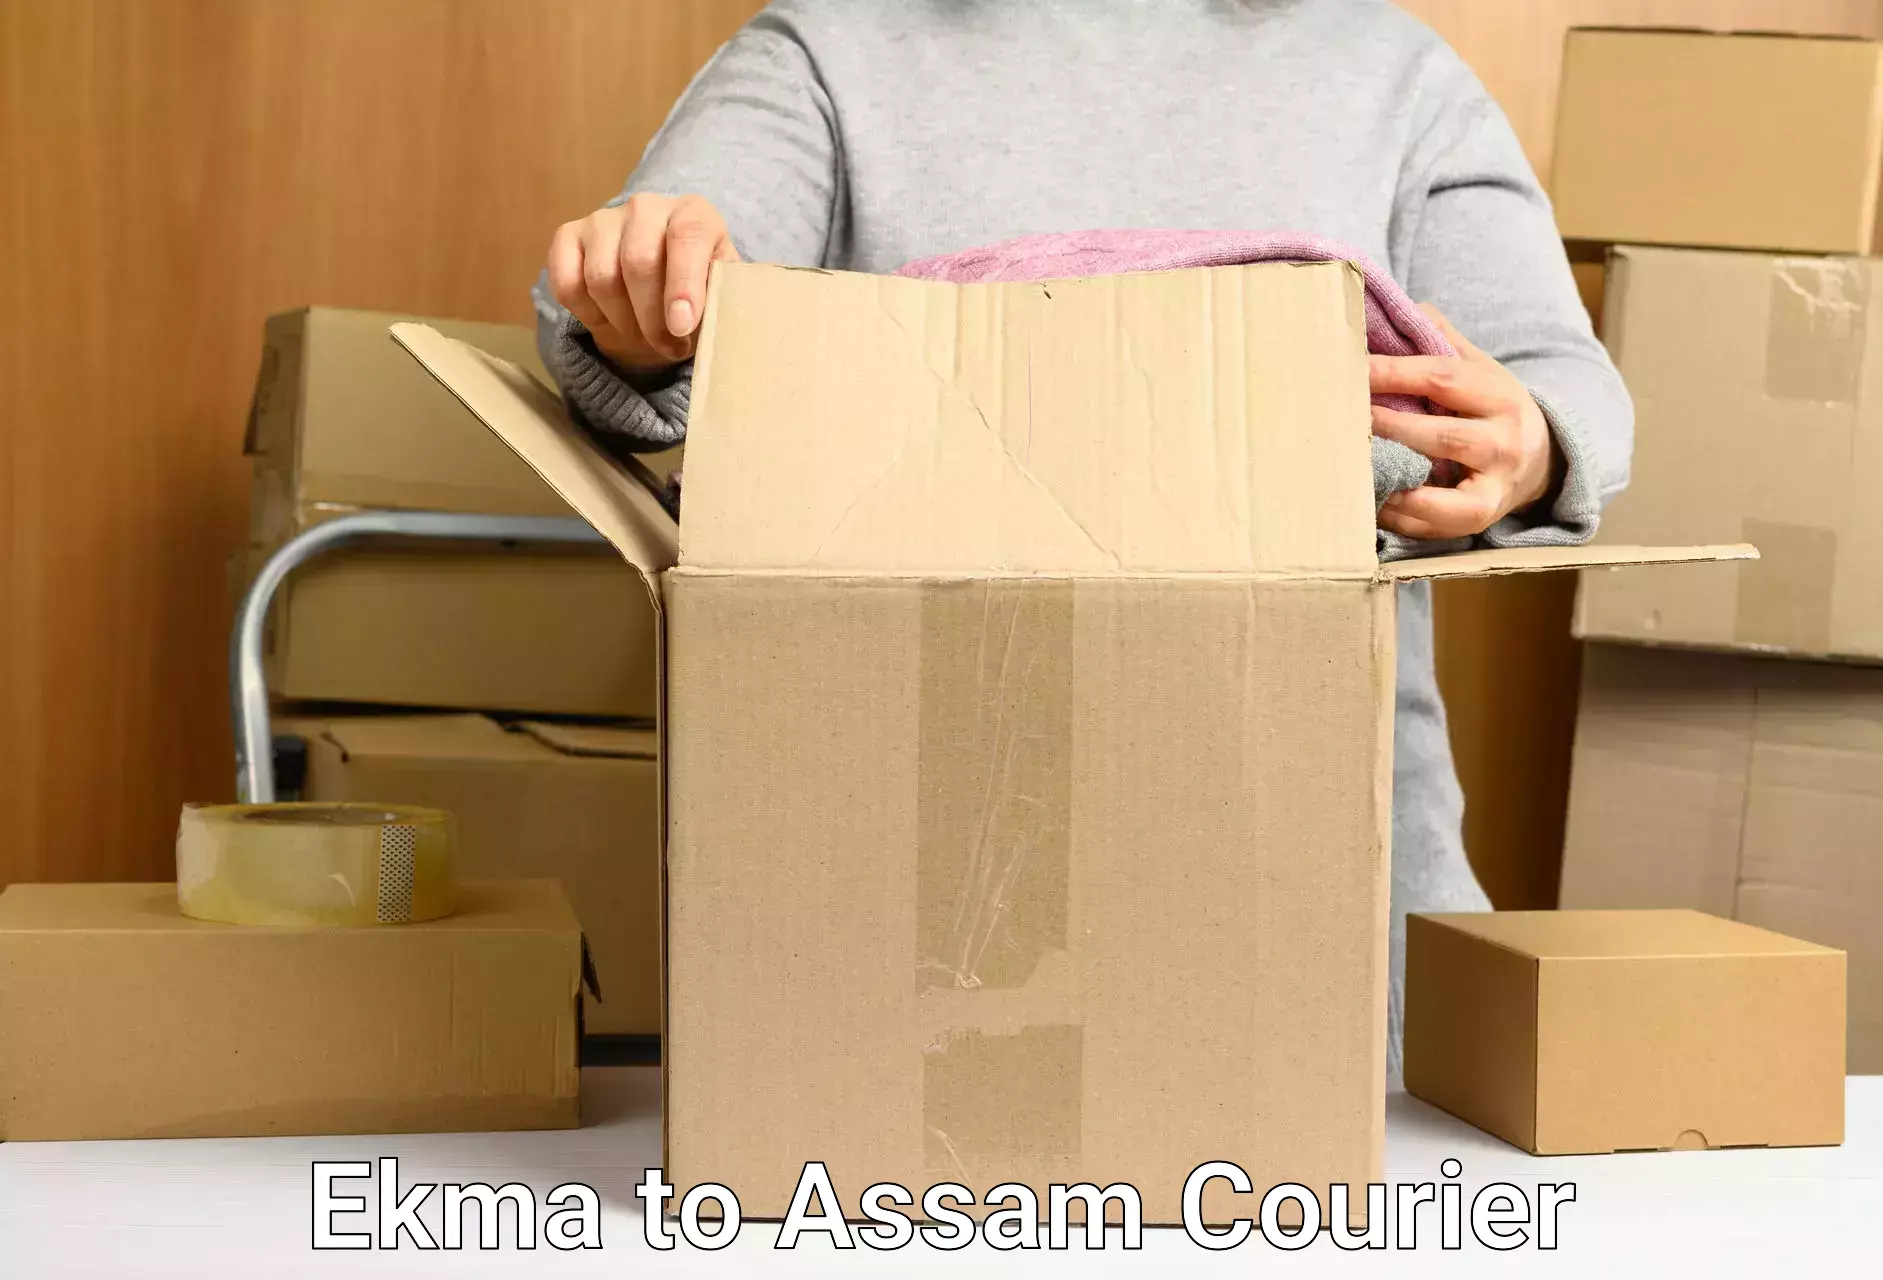 Seamless shipping experience Ekma to Fekamari